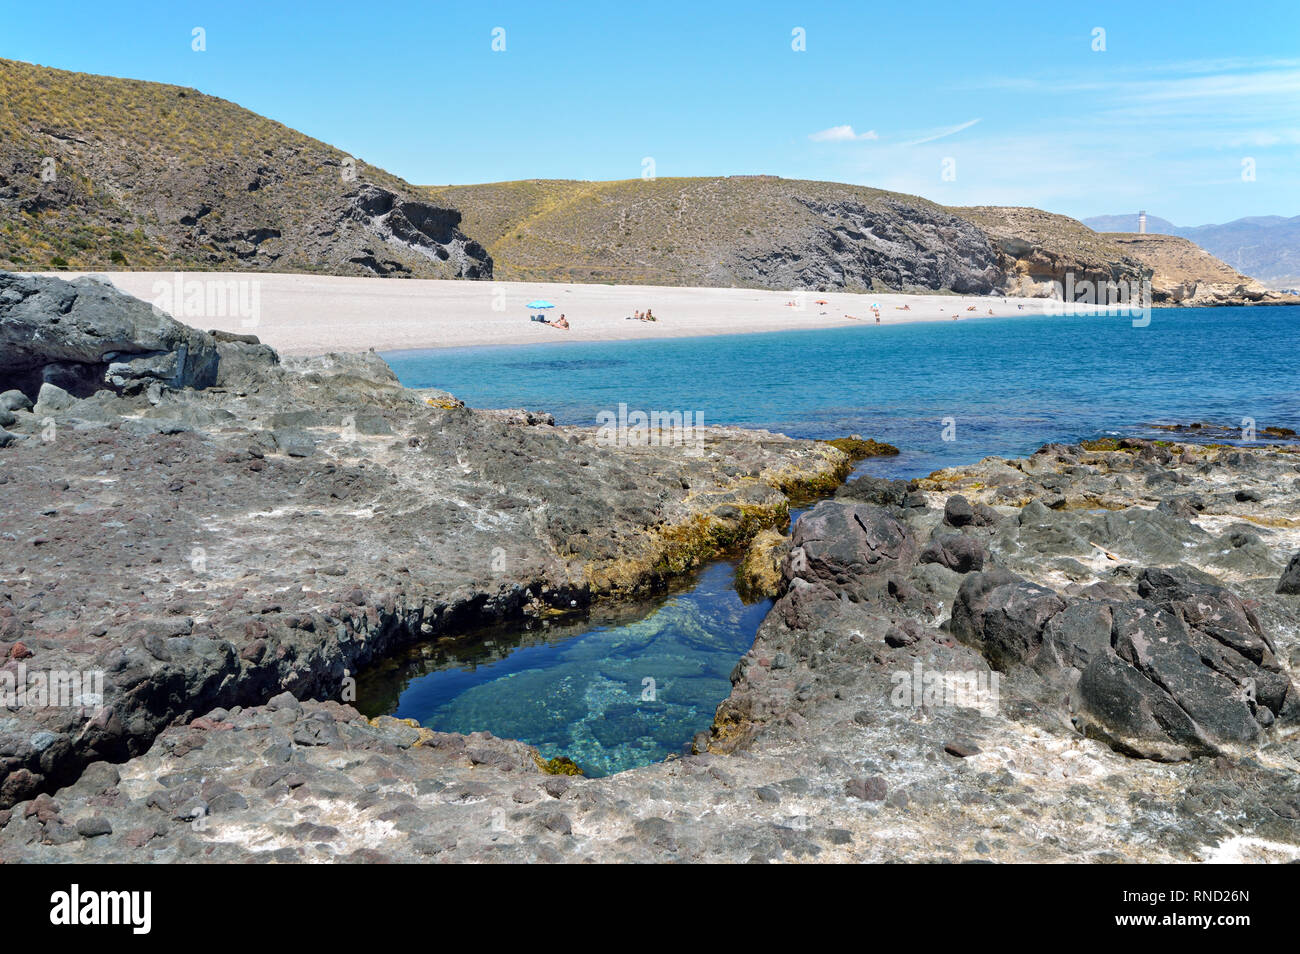 Playa de los Muertos (Spiaggia del Morto) è una delle più belle spiagge in Andalusia (Spagna) con acque cristalline. Foto Stock